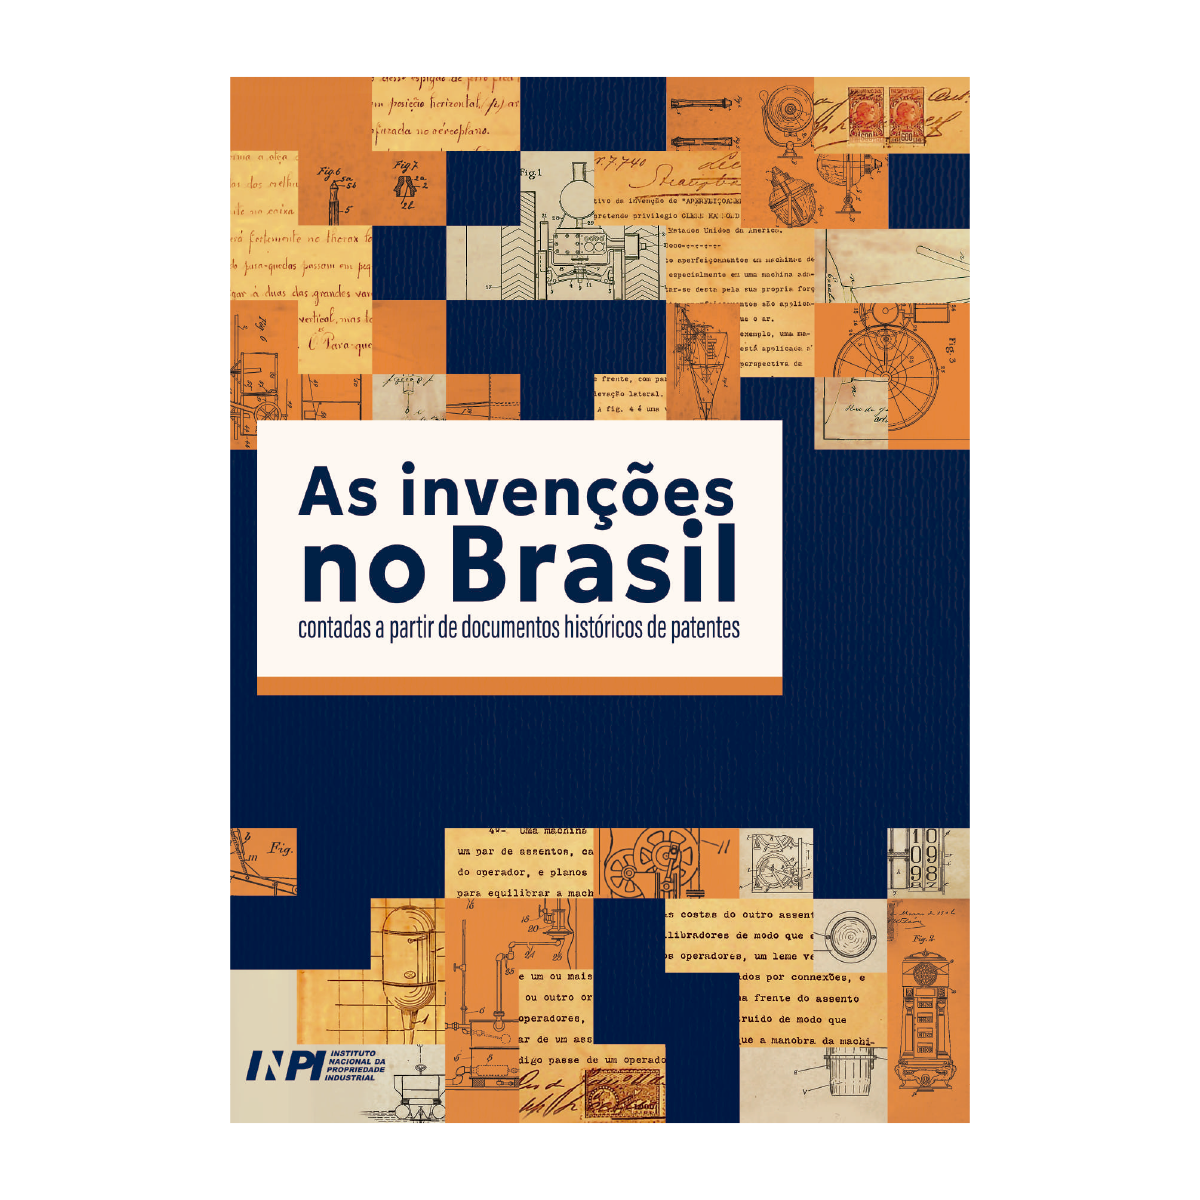 Capa do livro "As invenções no Brasil"